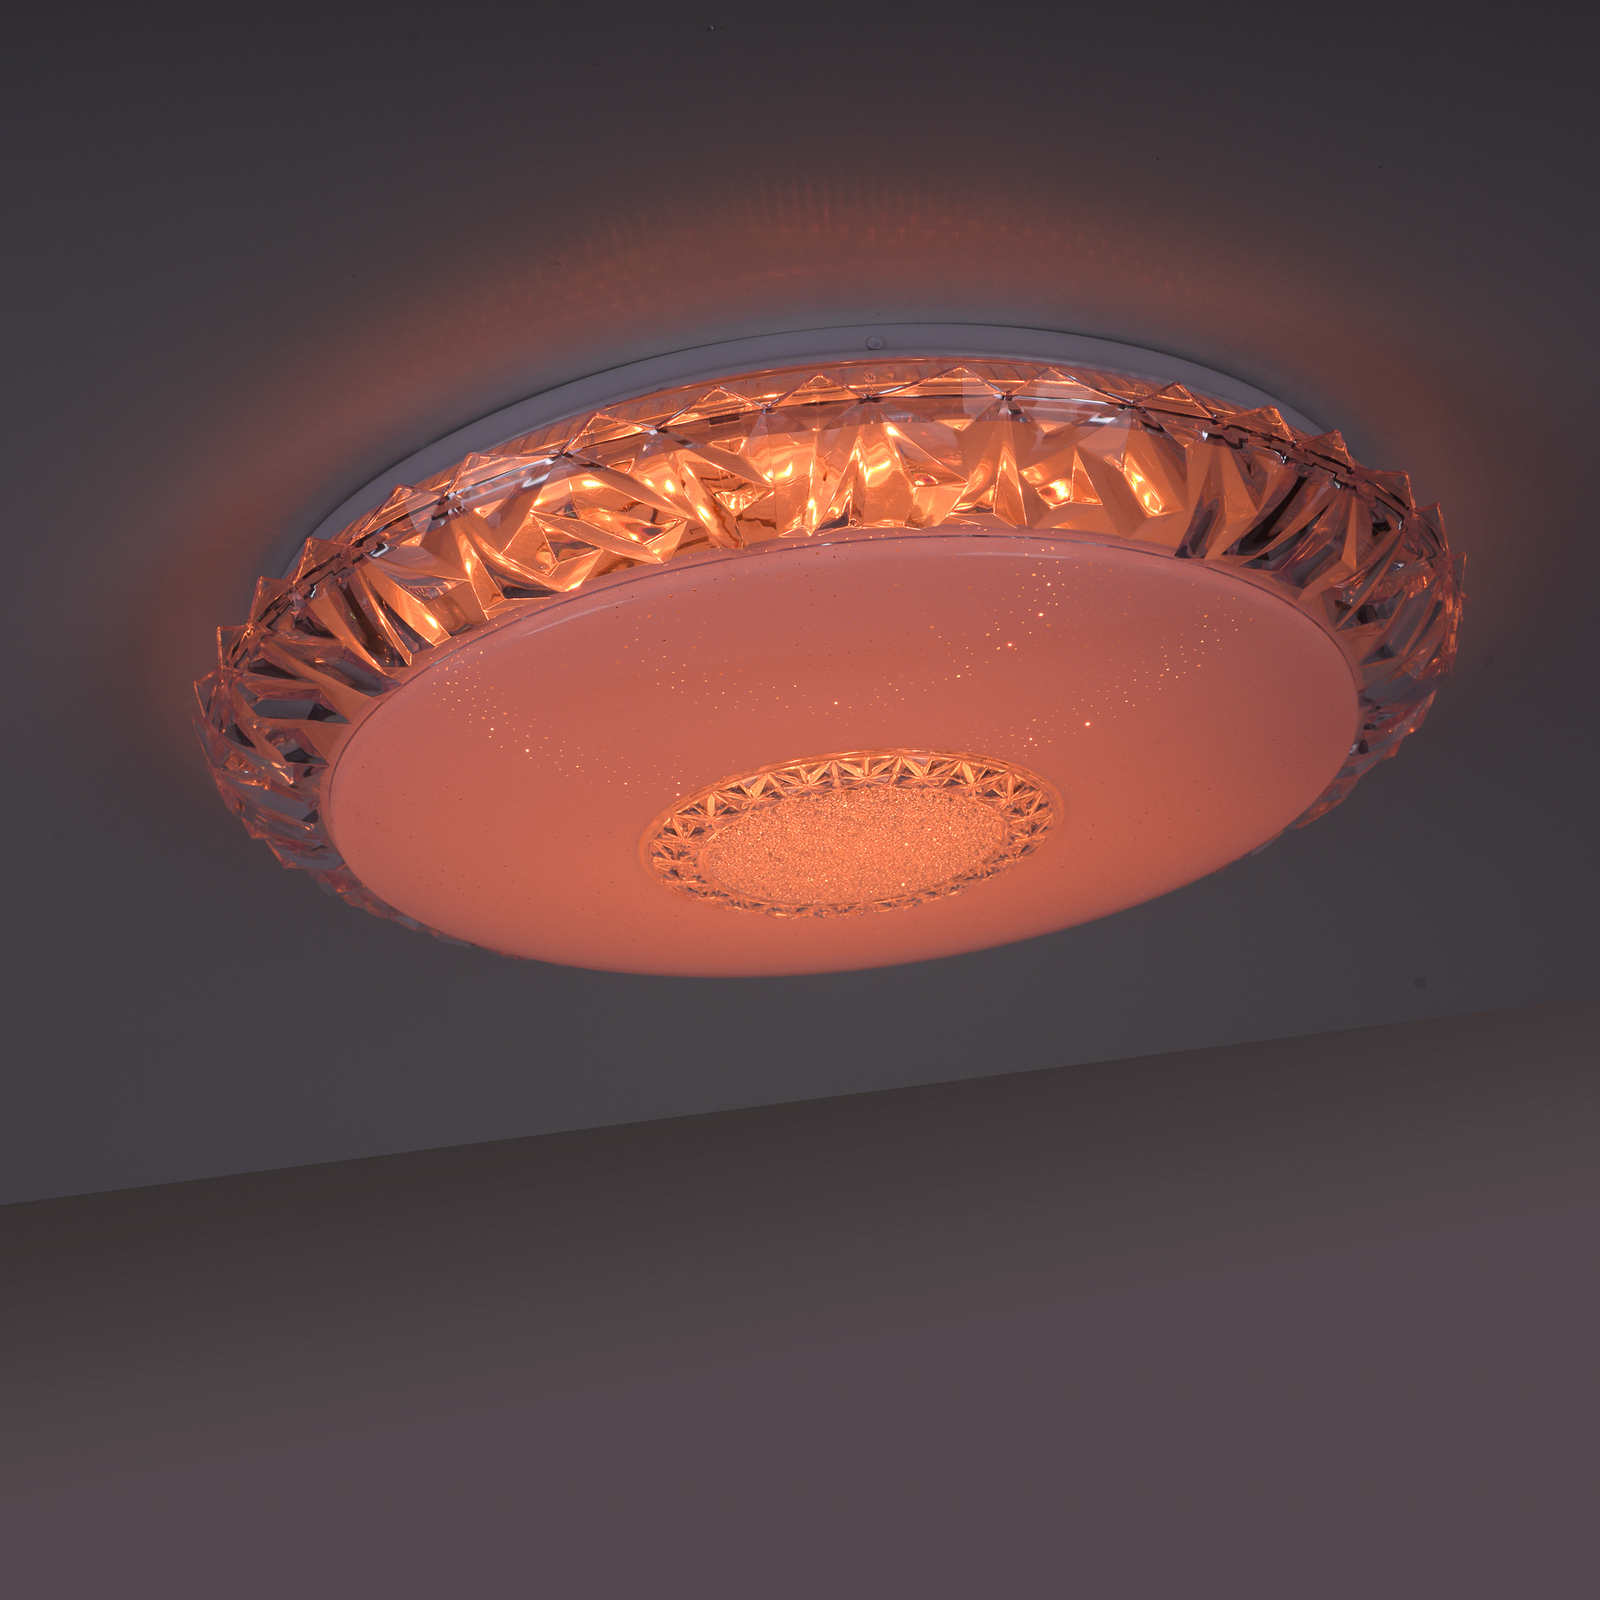 LED stropní svítidlo Lucca, RGB/CCT, Ø 51cm